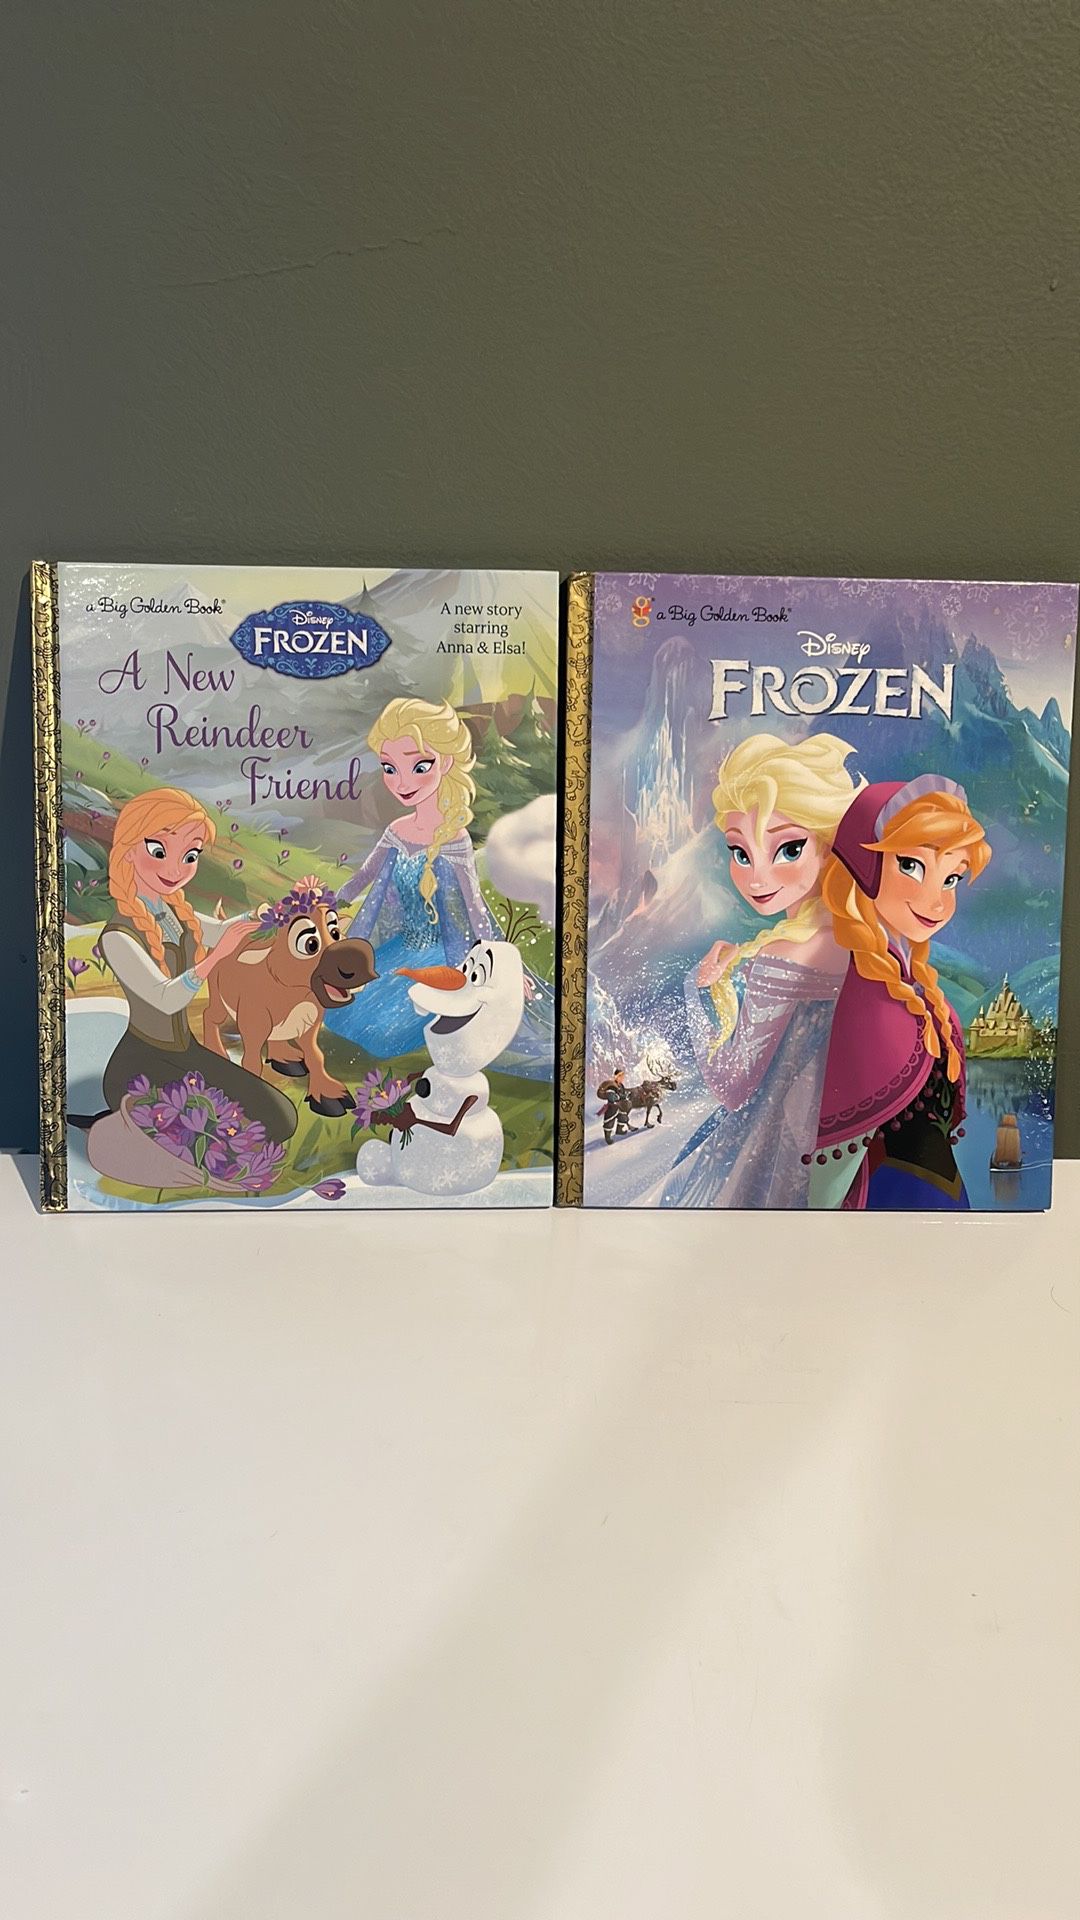 A Big Golden Book Disney Frozen & A New Reindeer Friend